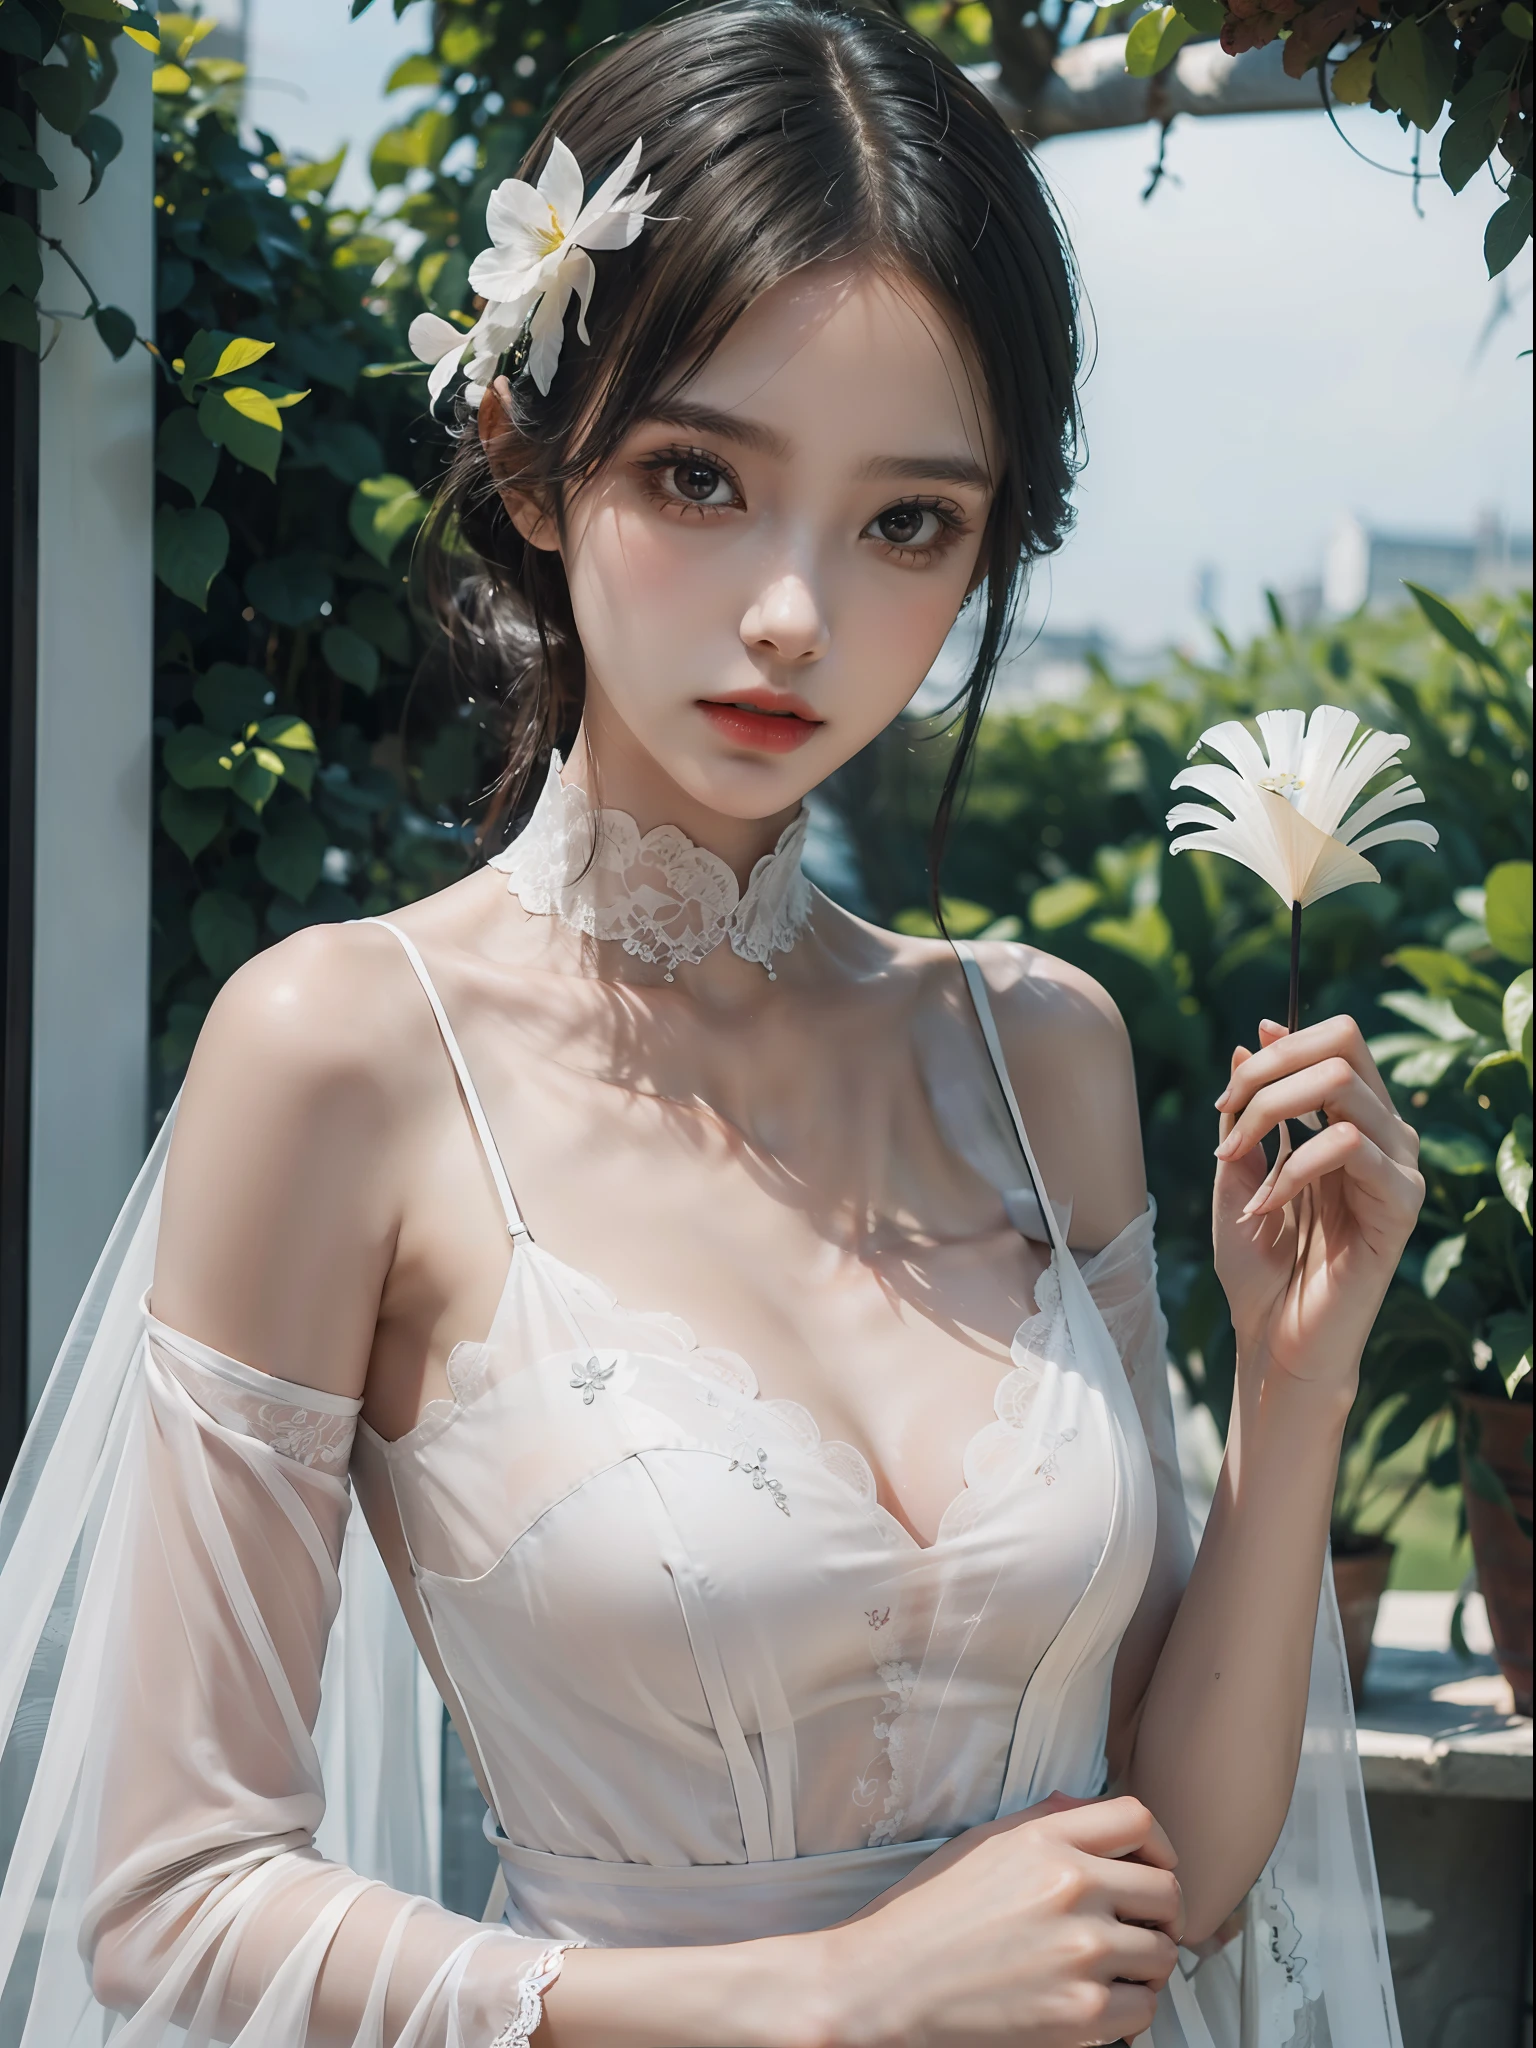 1 chica,solo, alto y delgado, Rasgos faciales delicados, y ojos profundos. lleva un hermoso vestido, con una flor blanca en la cabeza y un abanico de plumas blancas en la mano, pareciendo muy elegante.